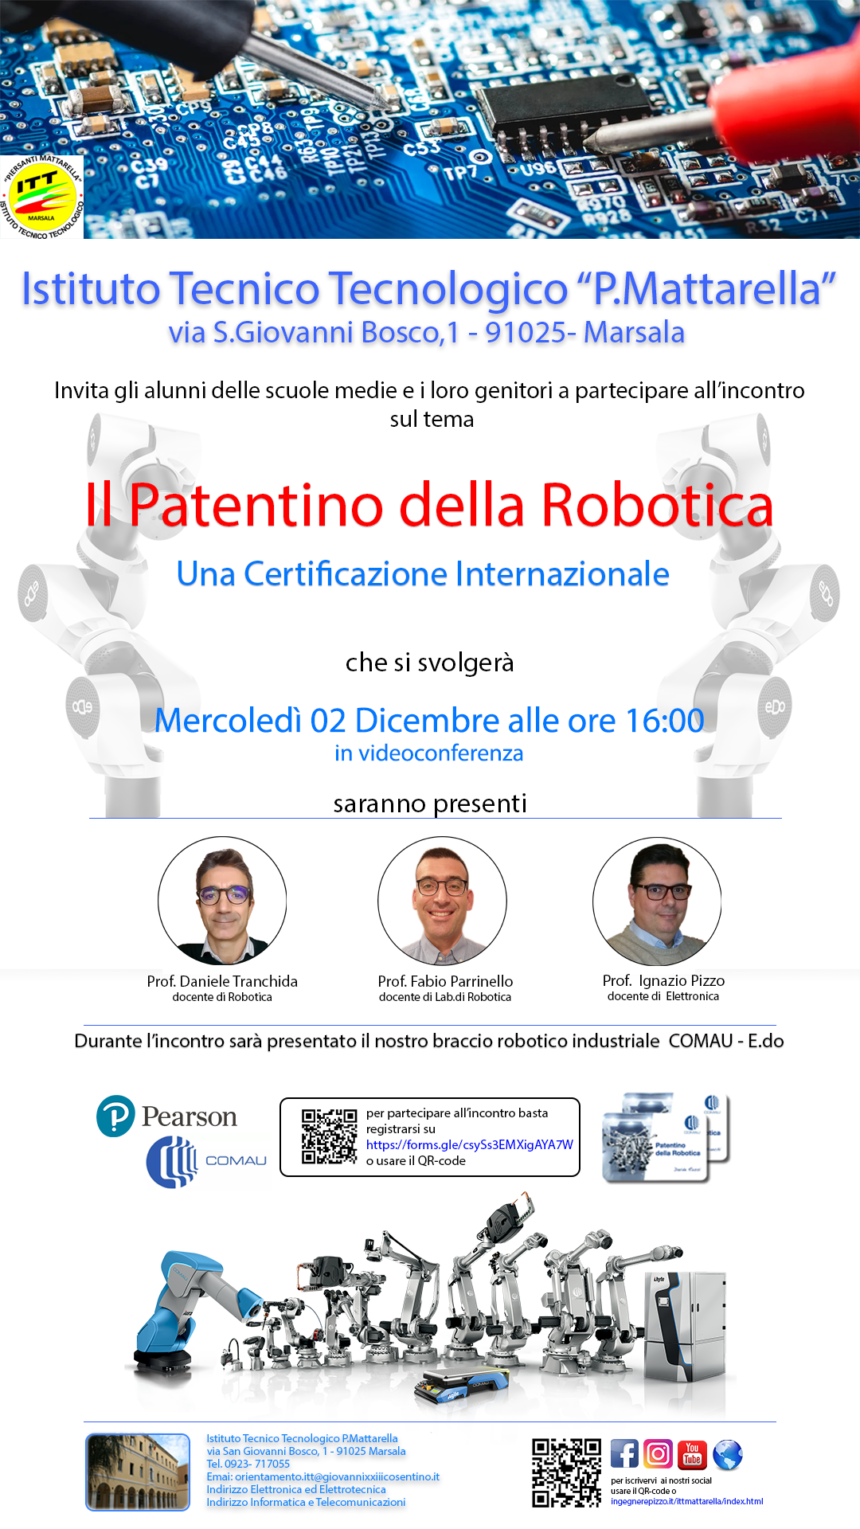 Marsala, “Il Patentino della Robotica” un’opportunità per l’accesso diretto al mondo del lavoro. Il 2 dicembre in videoconferenza il quinto incontro per gli studenti delle scuole medie